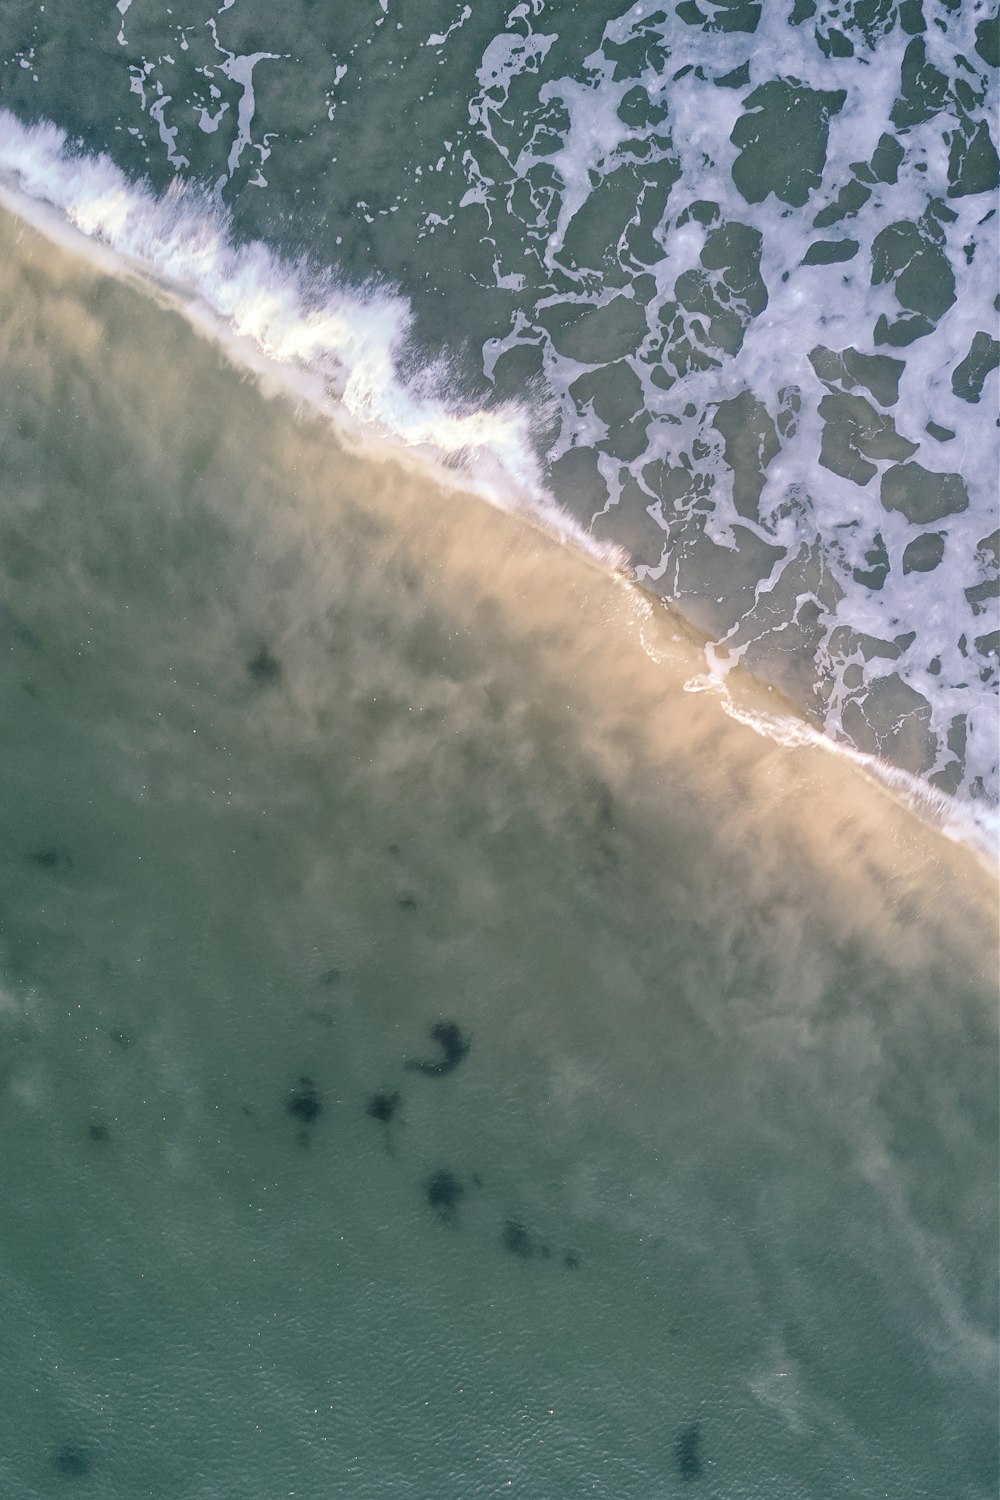 vista aérea das ondas do oceano